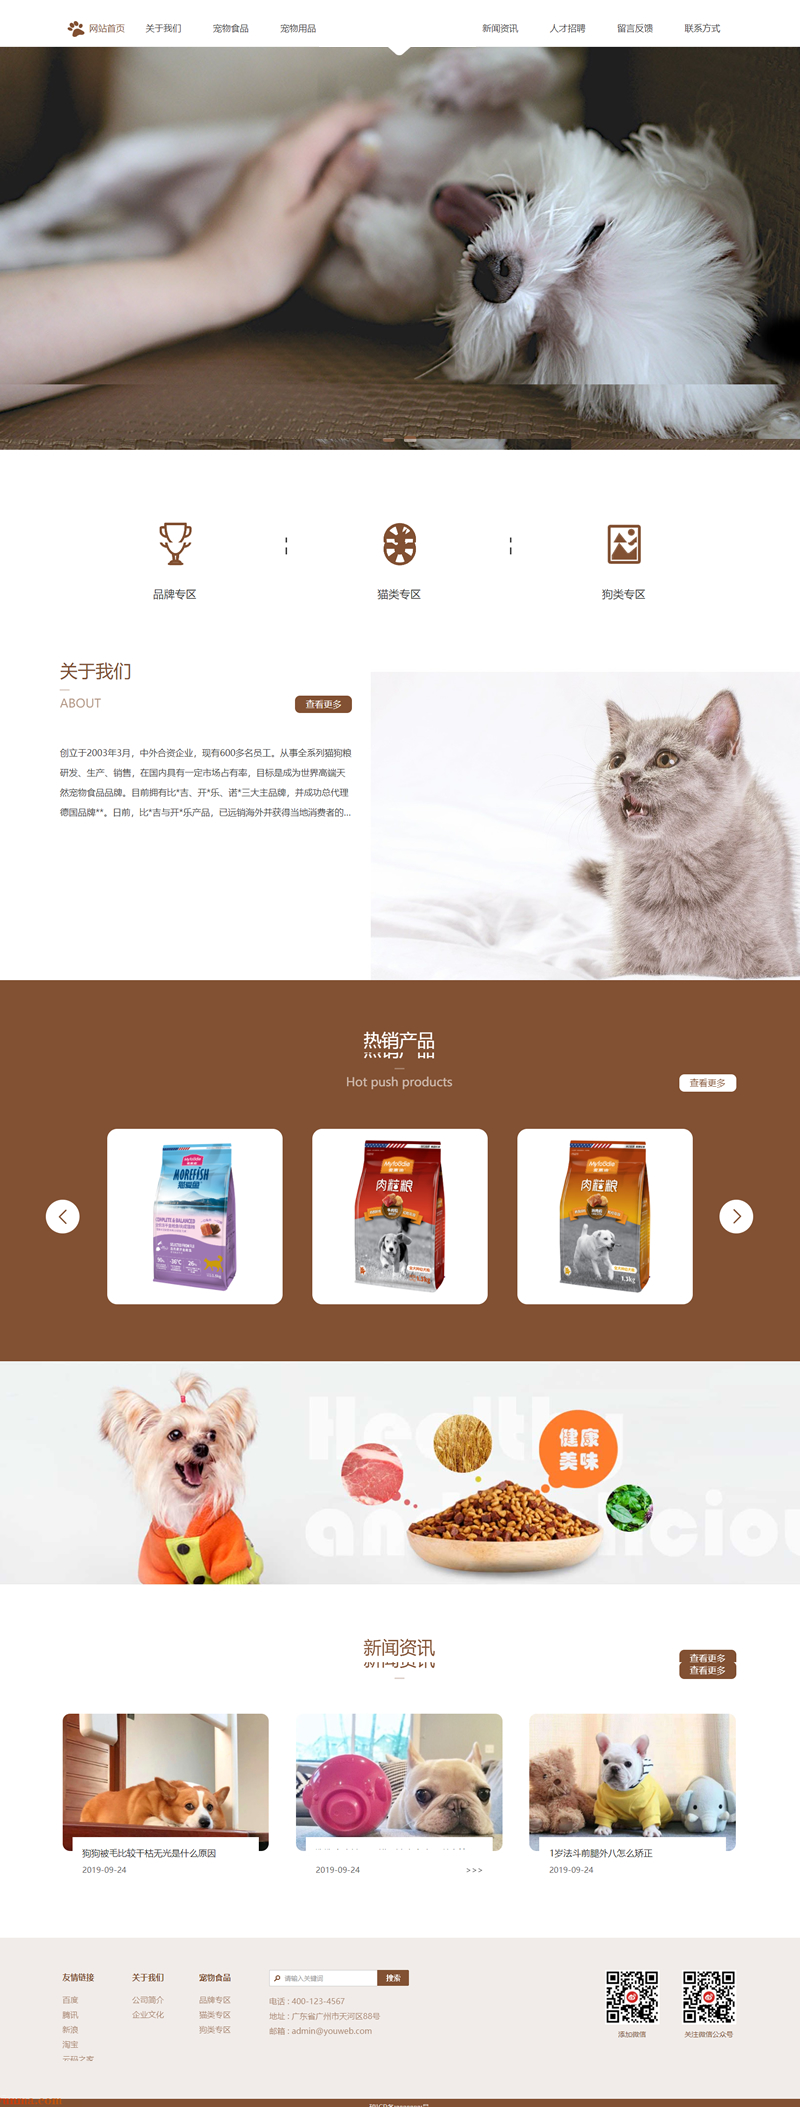 响应式宠物食品用品公司网站源码 EyouCMS模板